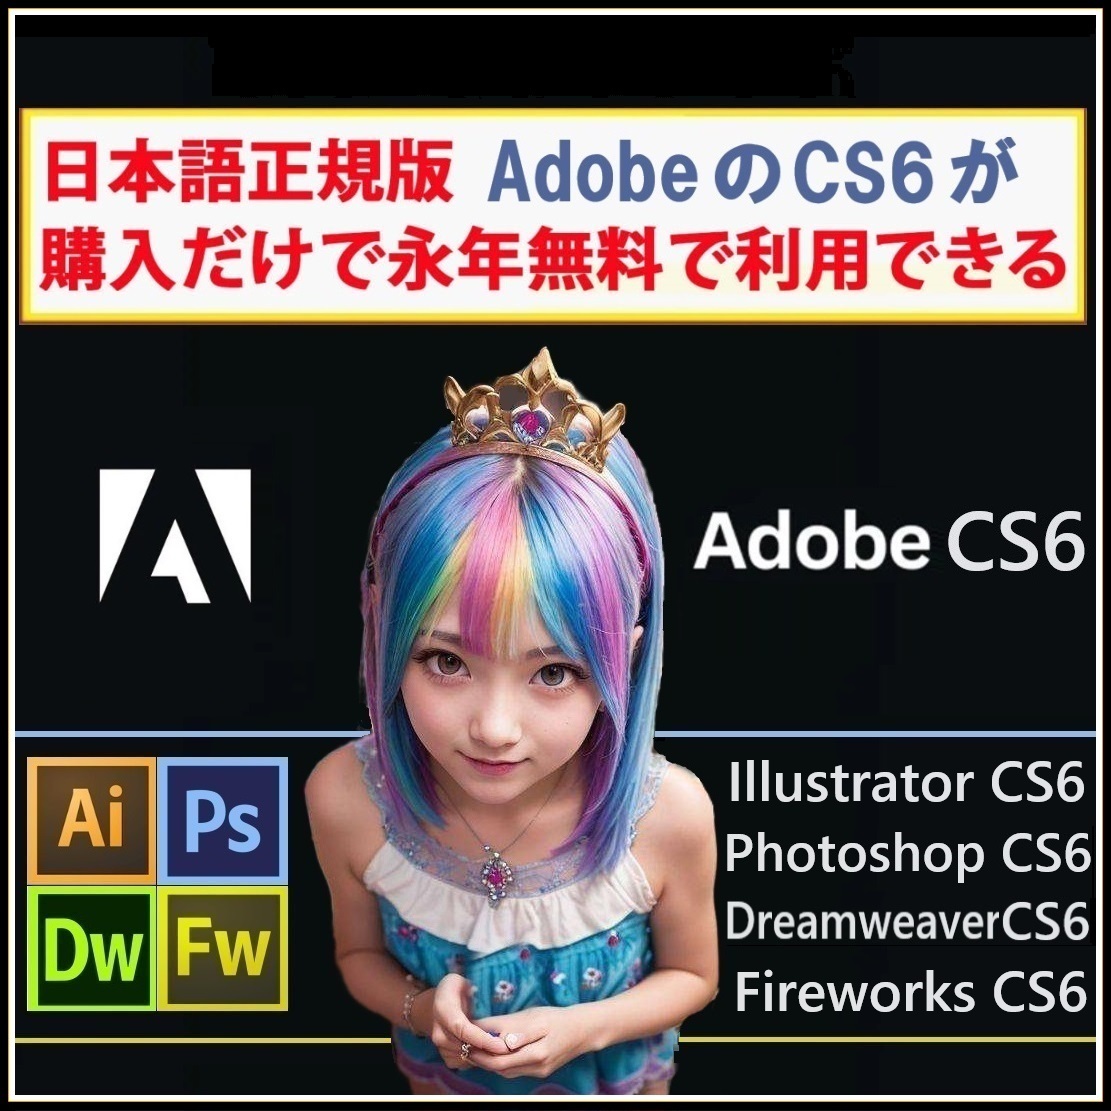 Adobe CS6が4種 Win版 (10/11対応) Illustrator CS6/Adobe Photoshop CS6/Dreamweaver CS6/Fireworks CS6【全シリアル番号完備】Type-Zの画像1